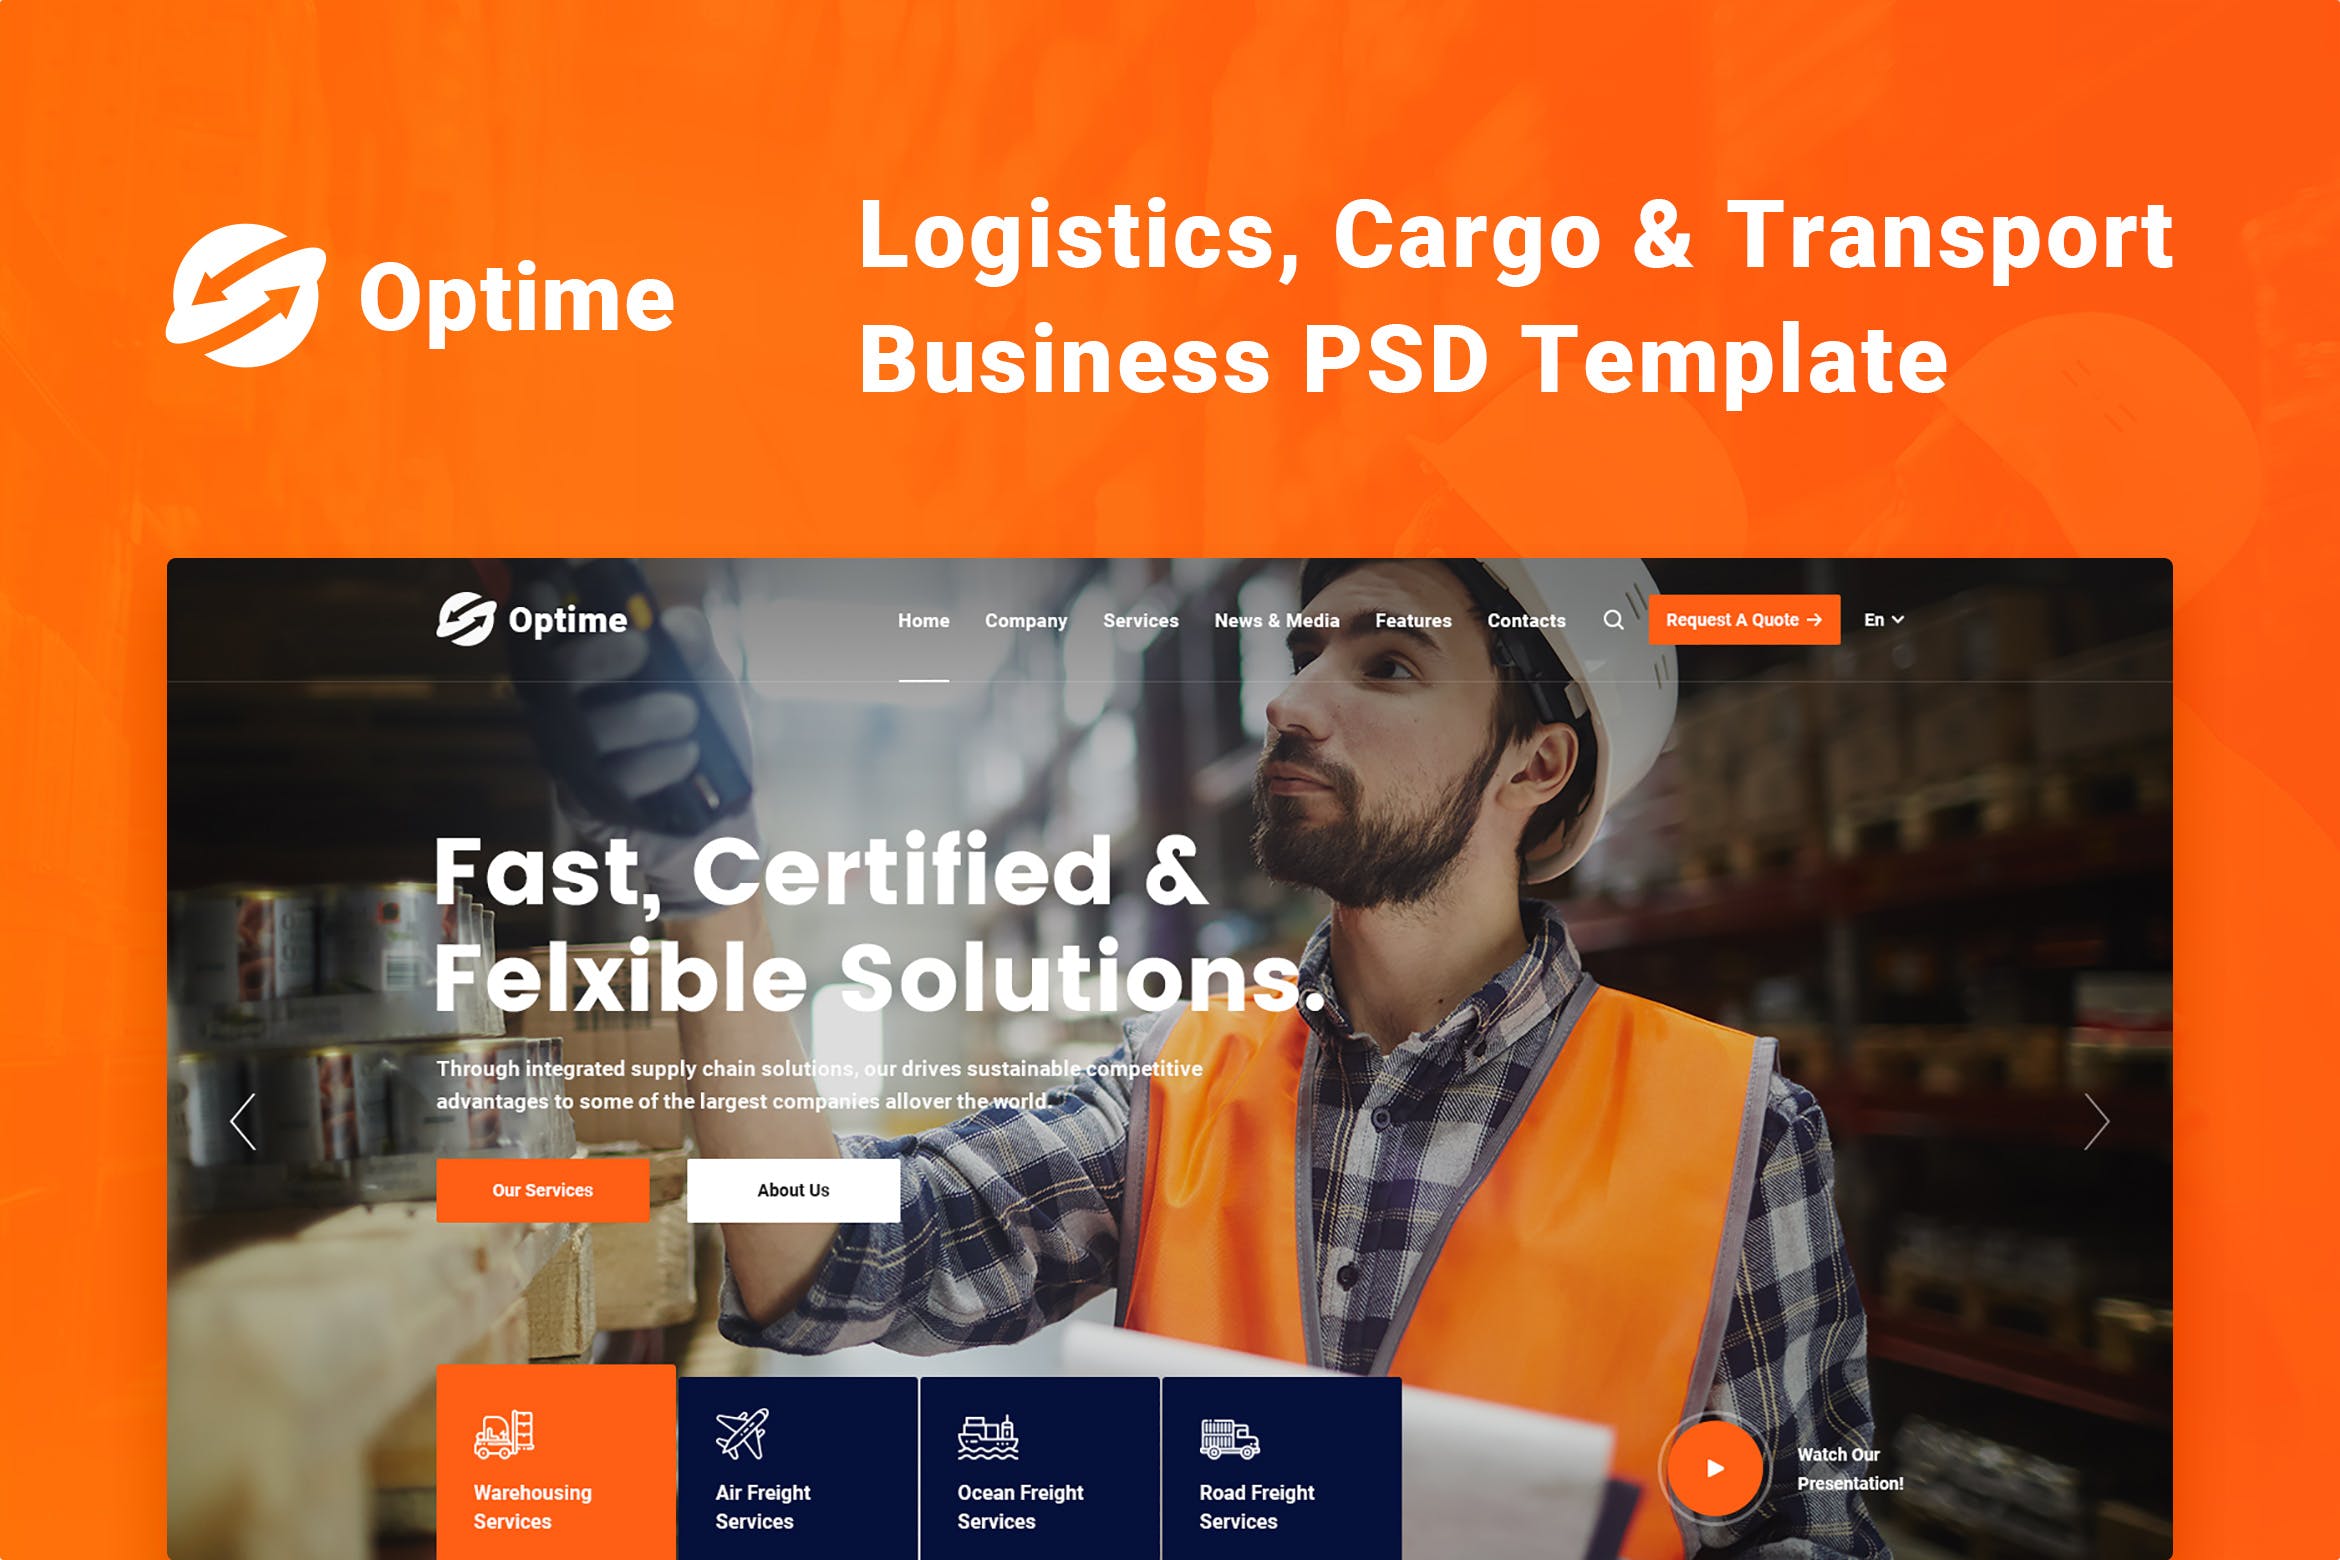 物流货运/快递运输公司官网设计PSD模板 Optime – Logistics, Cargo & Transport PSD Template插图